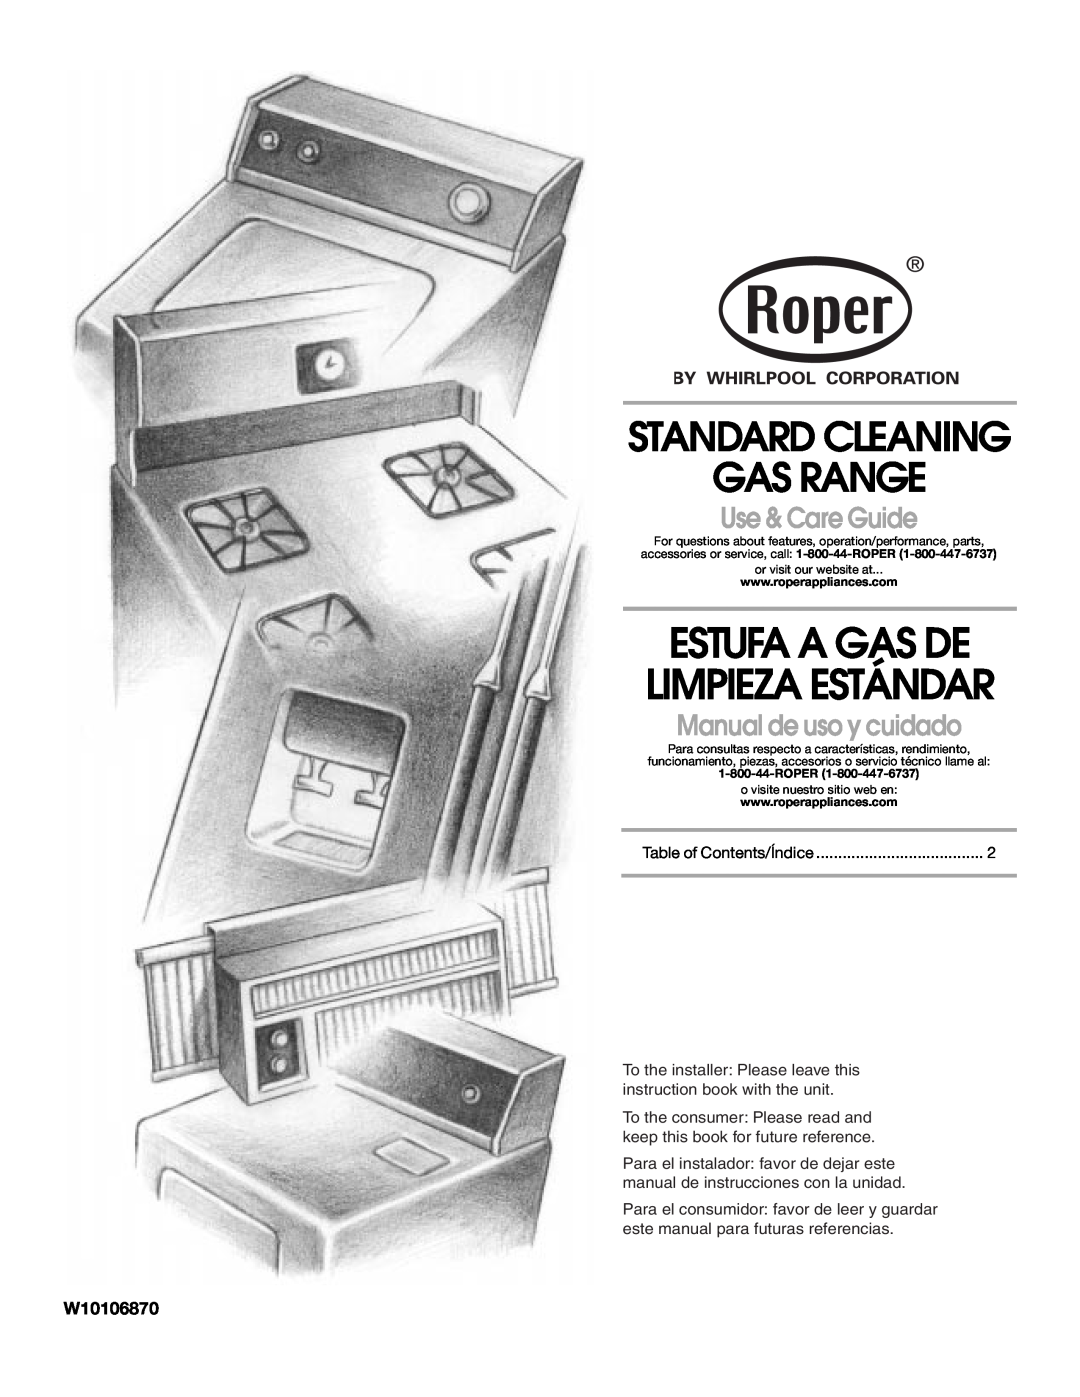 Whirlpool W10106870 manual Standard Cleaning Gas Range, Estufa A Gas De Limpieza Estándar, Use & Care Guide 